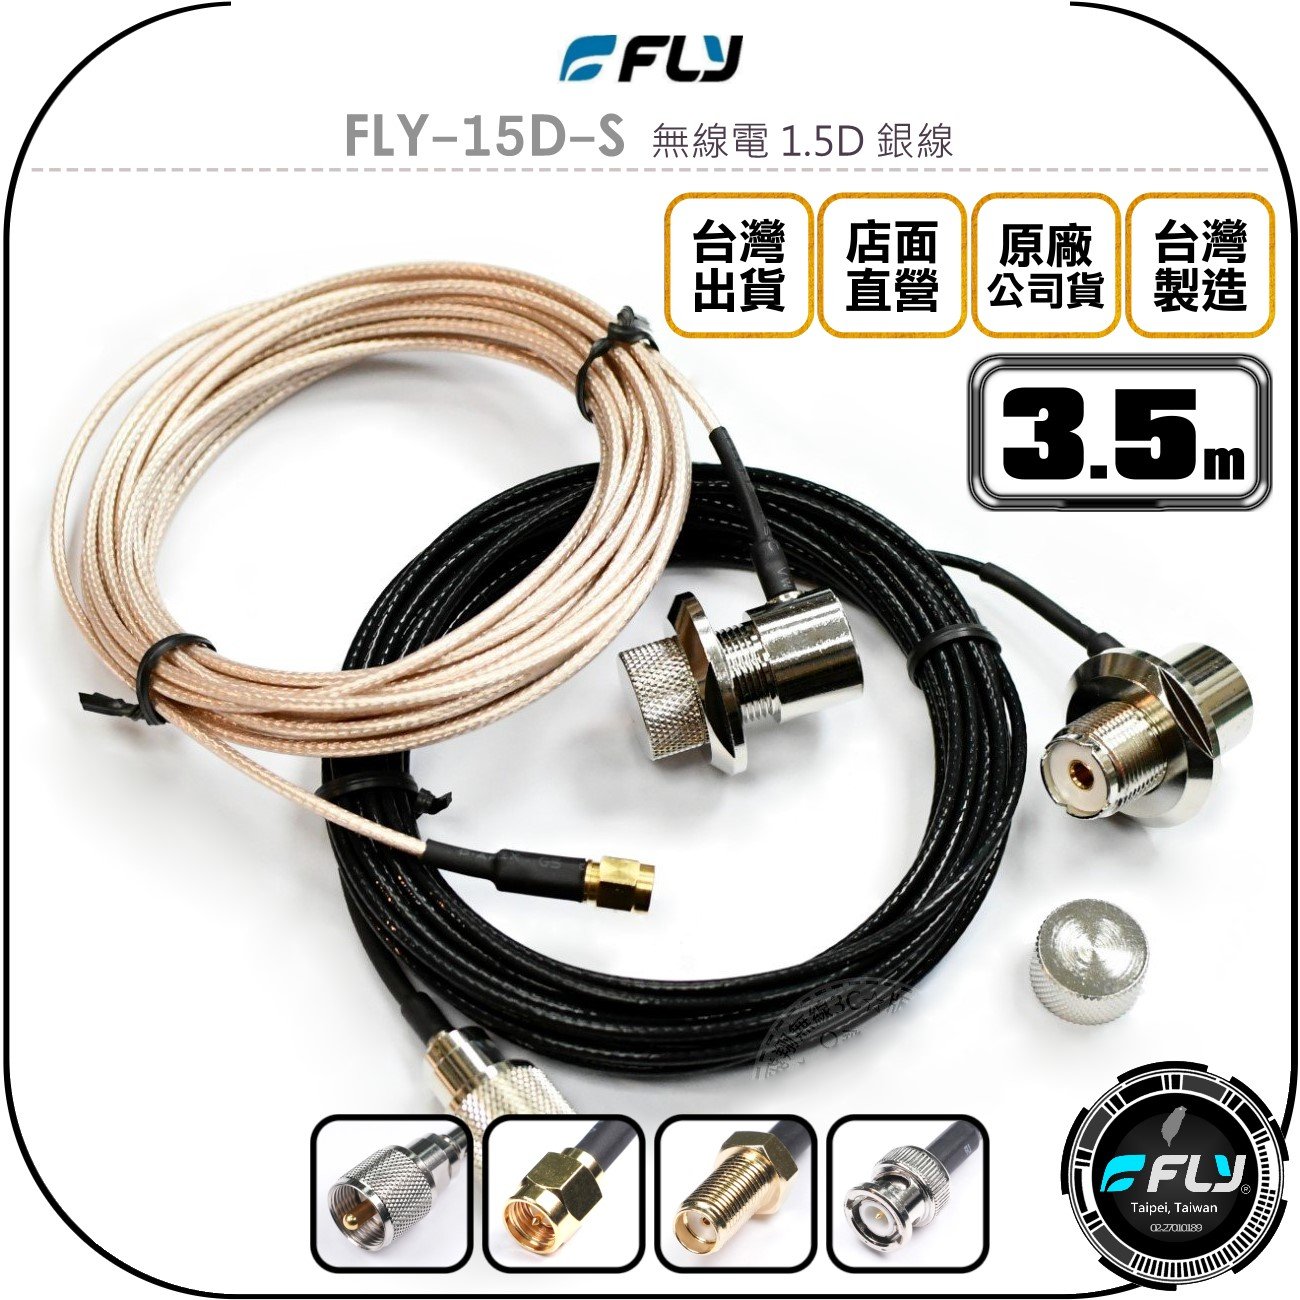 《飛翔無線3C》FLY FLY-15D-S 無線電 1.5D 銀線 3.5m◉公司貨◉訊號線◉對講機收發◉車機外接傳輸